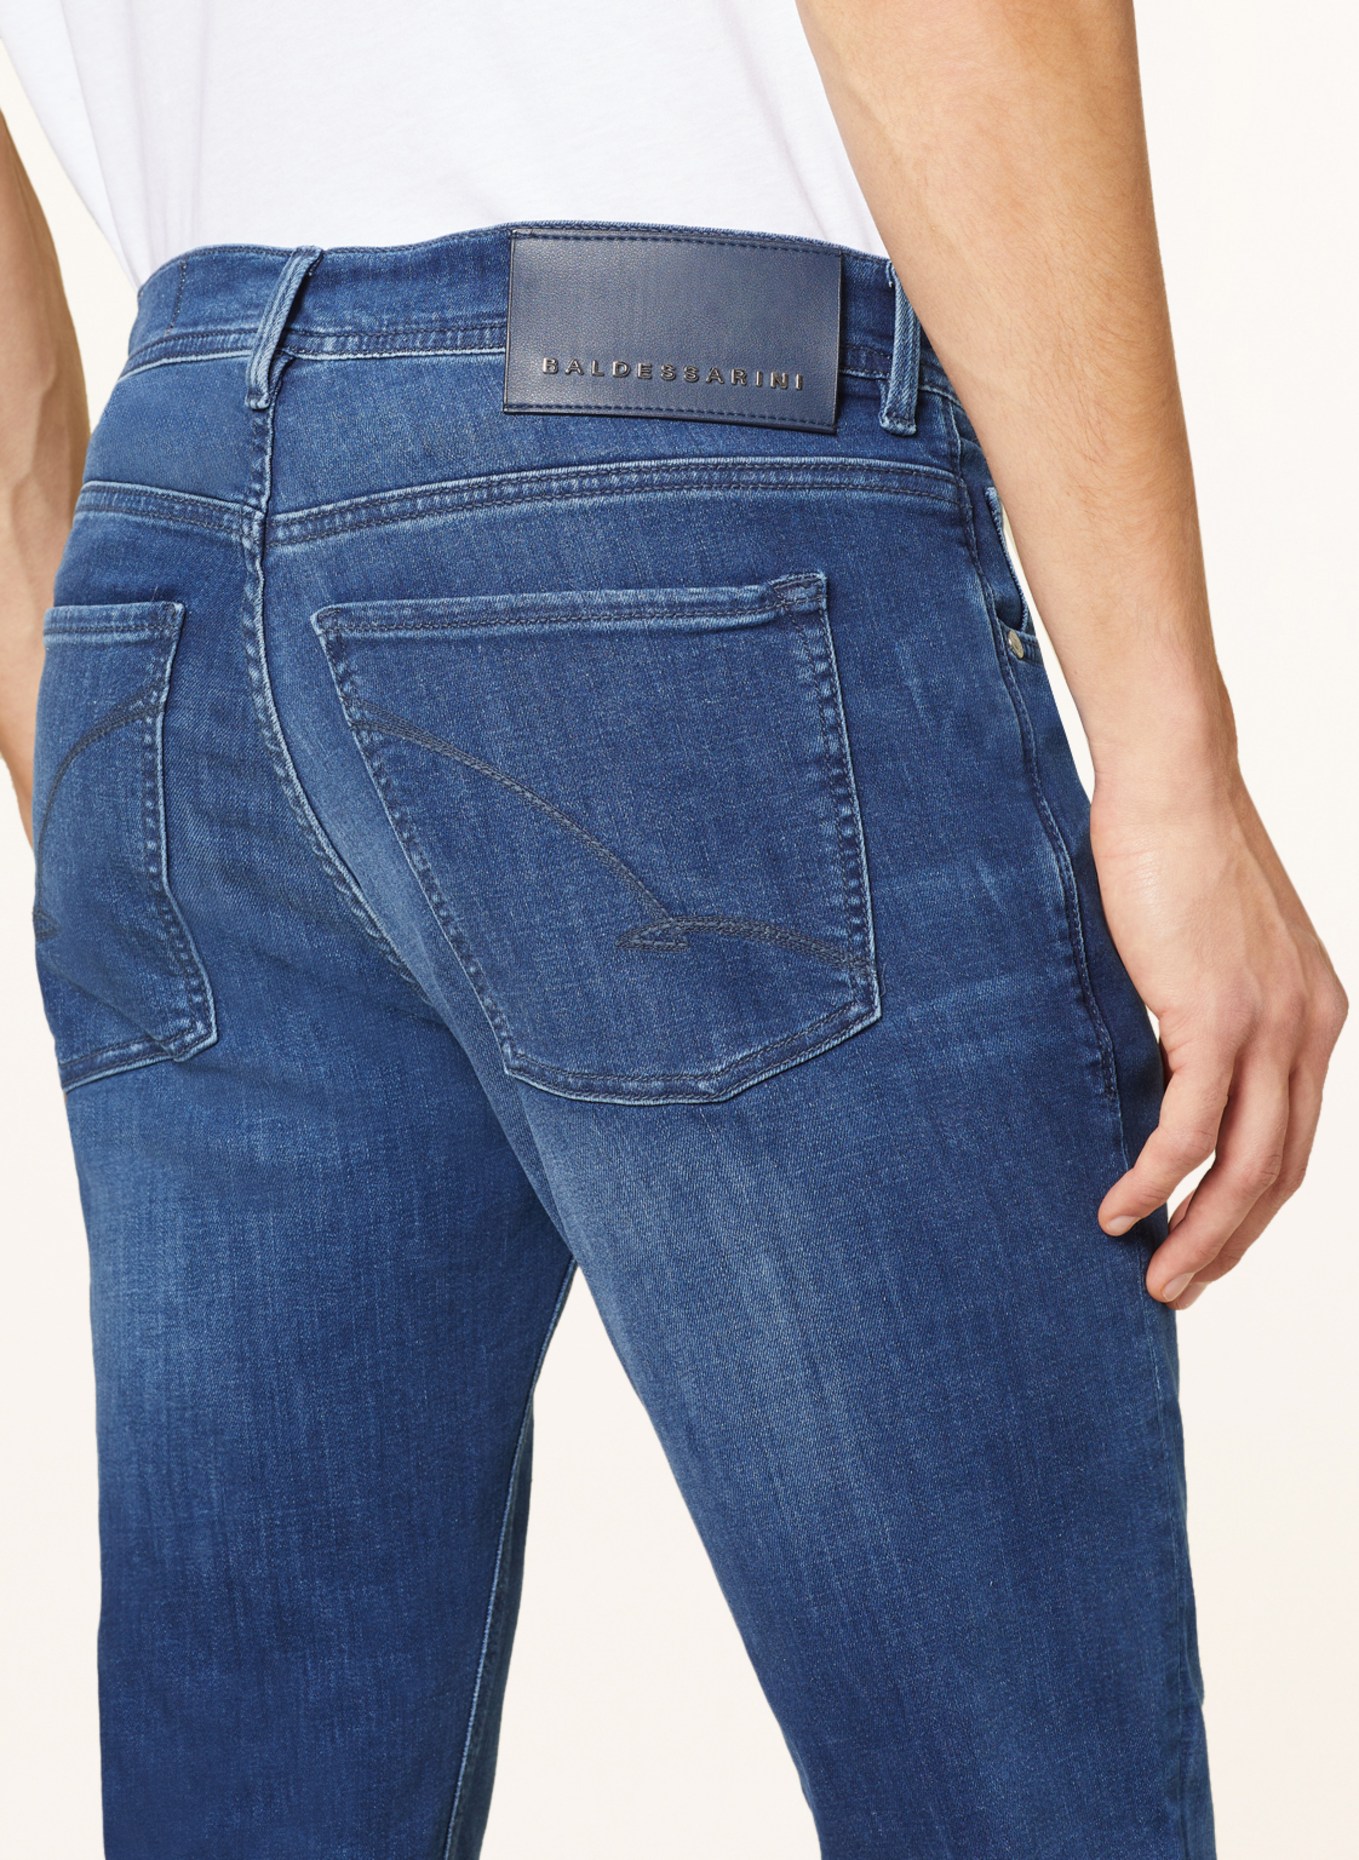 BALDESSARINI Jeans Regular Fit, Farbe: 6825 blue used whisker (Bild 5)